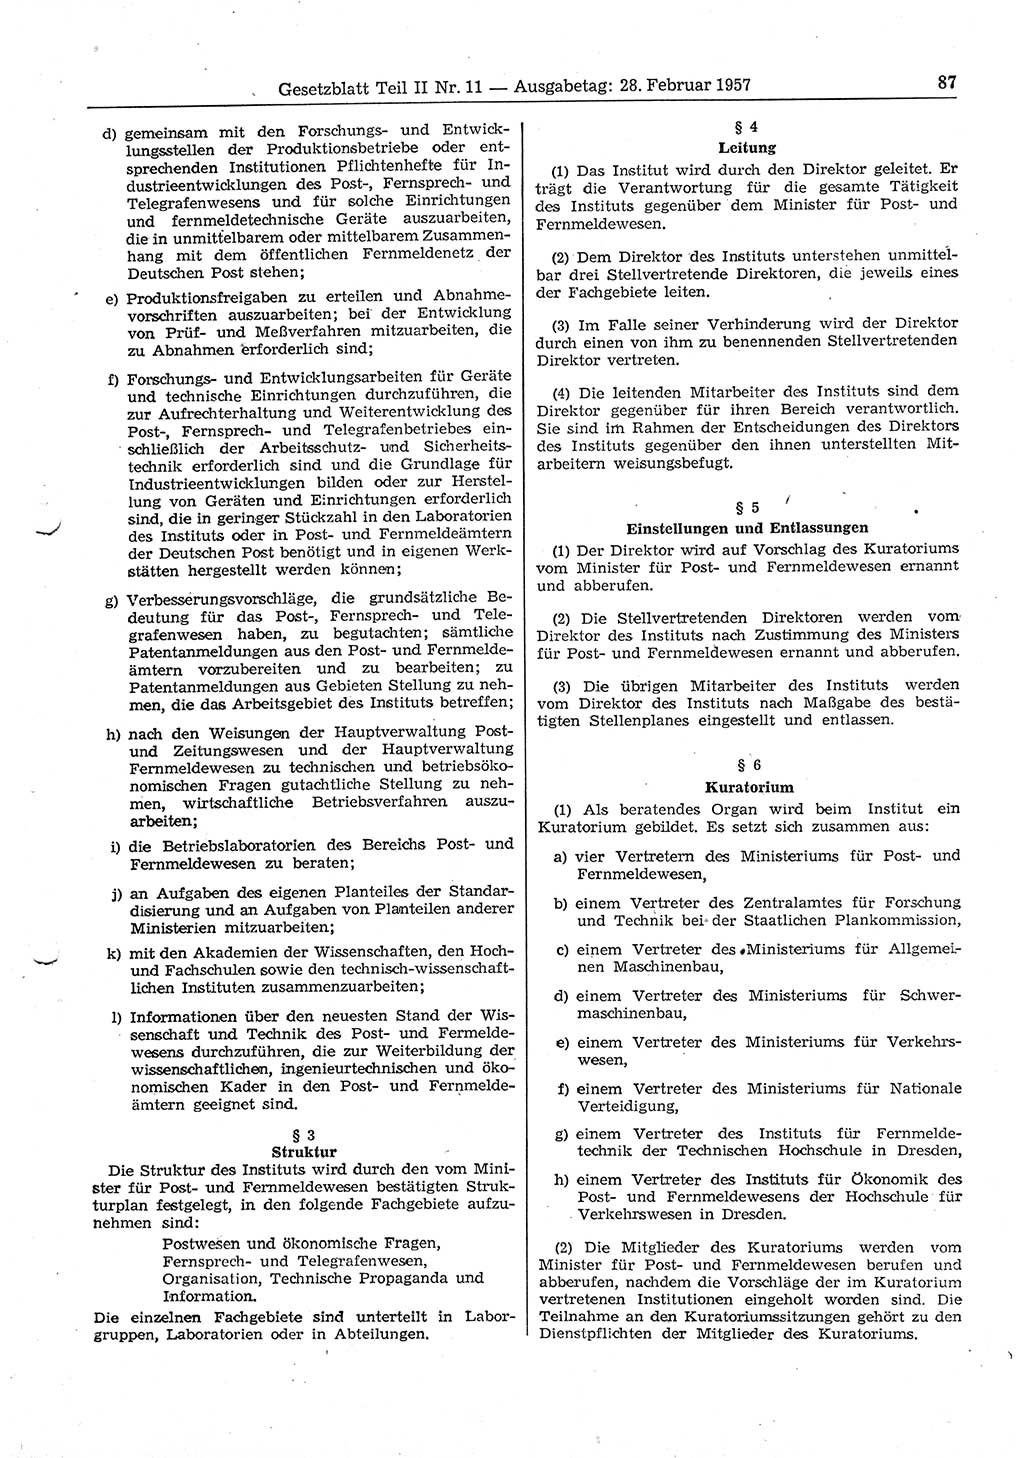 Gesetzblatt (GBl.) der Deutschen Demokratischen Republik (DDR) Teil ⅠⅠ 1957, Seite 87 (GBl. DDR ⅠⅠ 1957, S. 87)